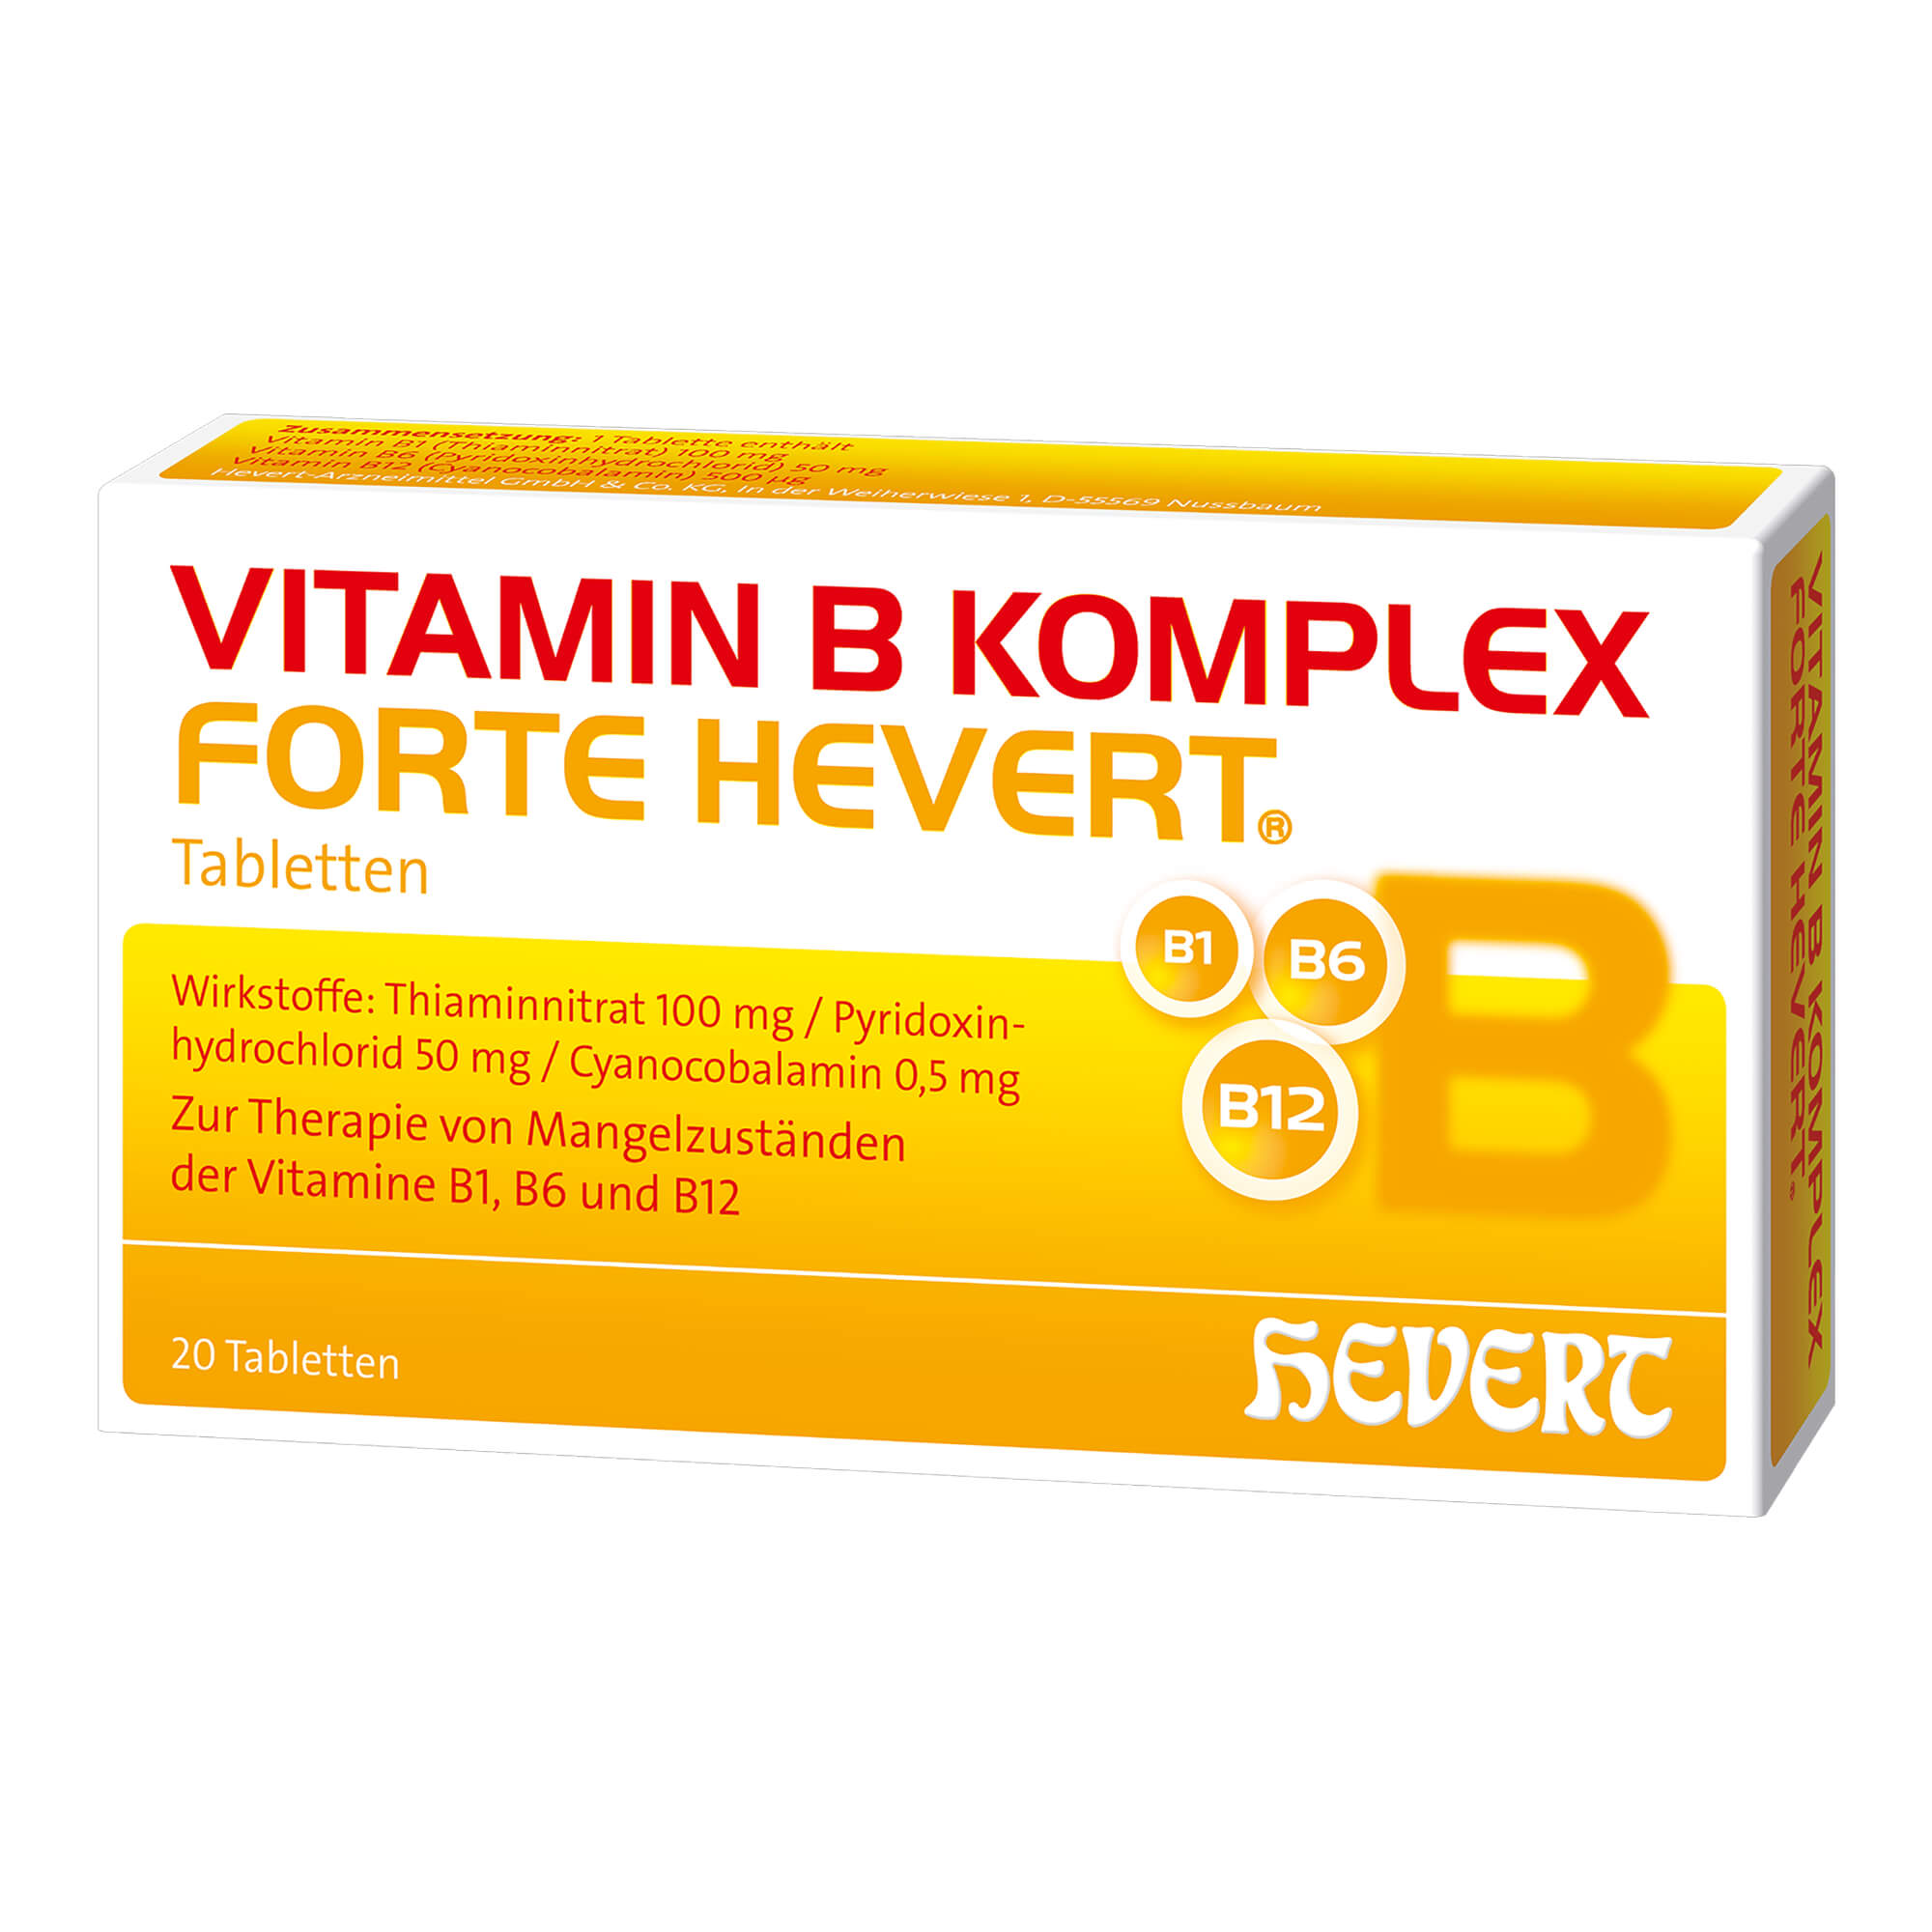 Vitaminpräparat zur Therapie nachgewiesener Mangelzustände der Vitamine B1, B6 und B12.